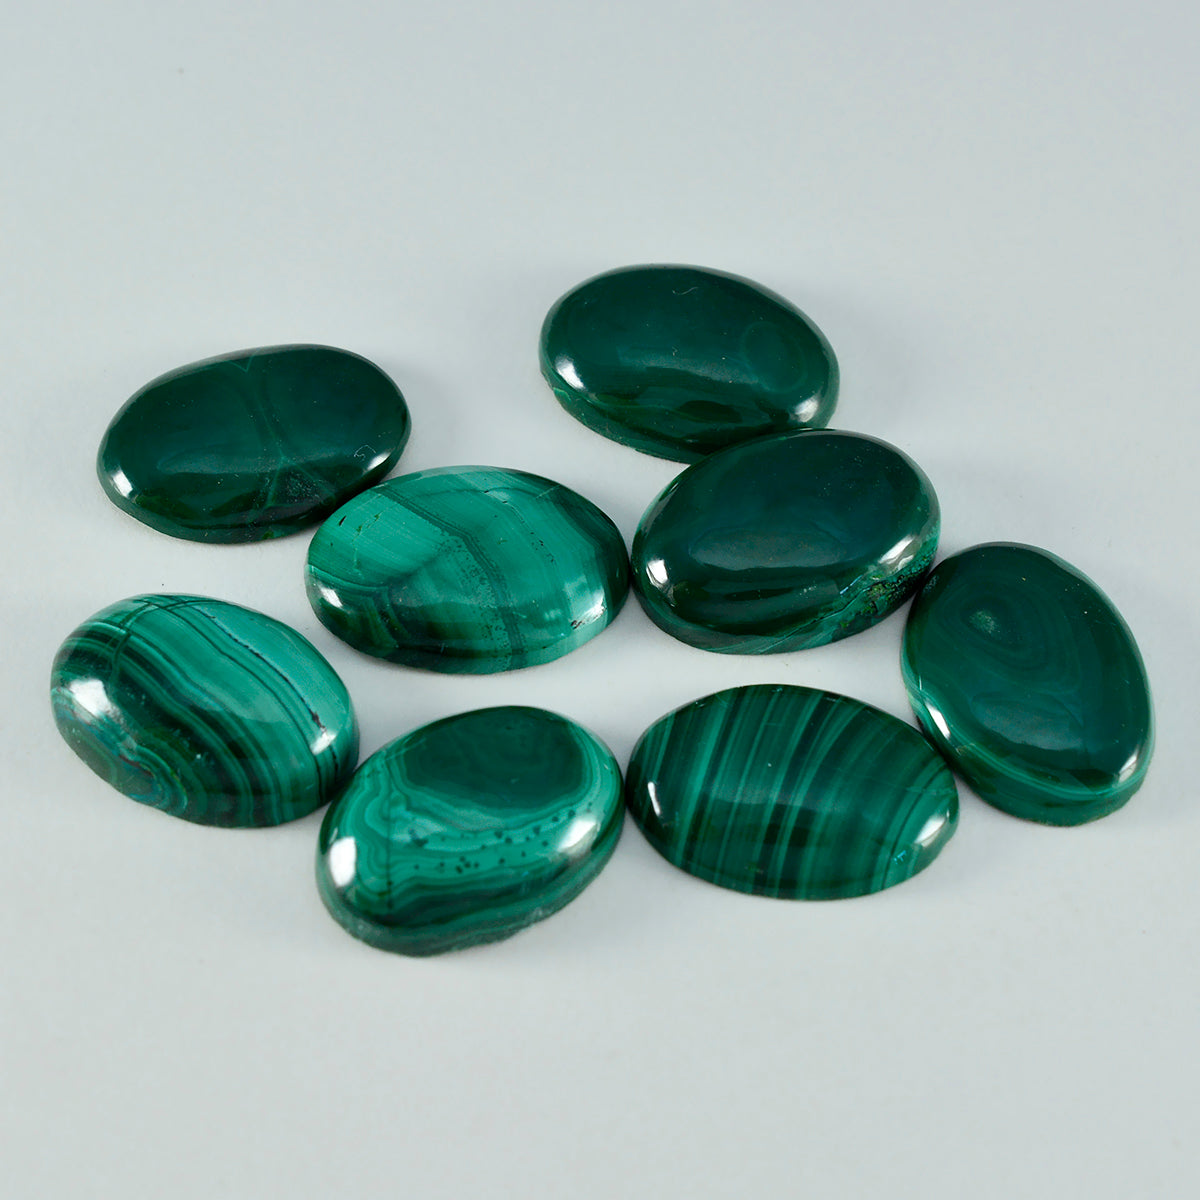 riyogems 1 pieza cabujón de malaquita verde 10x14 mm forma ovalada piedra preciosa suelta de calidad aa